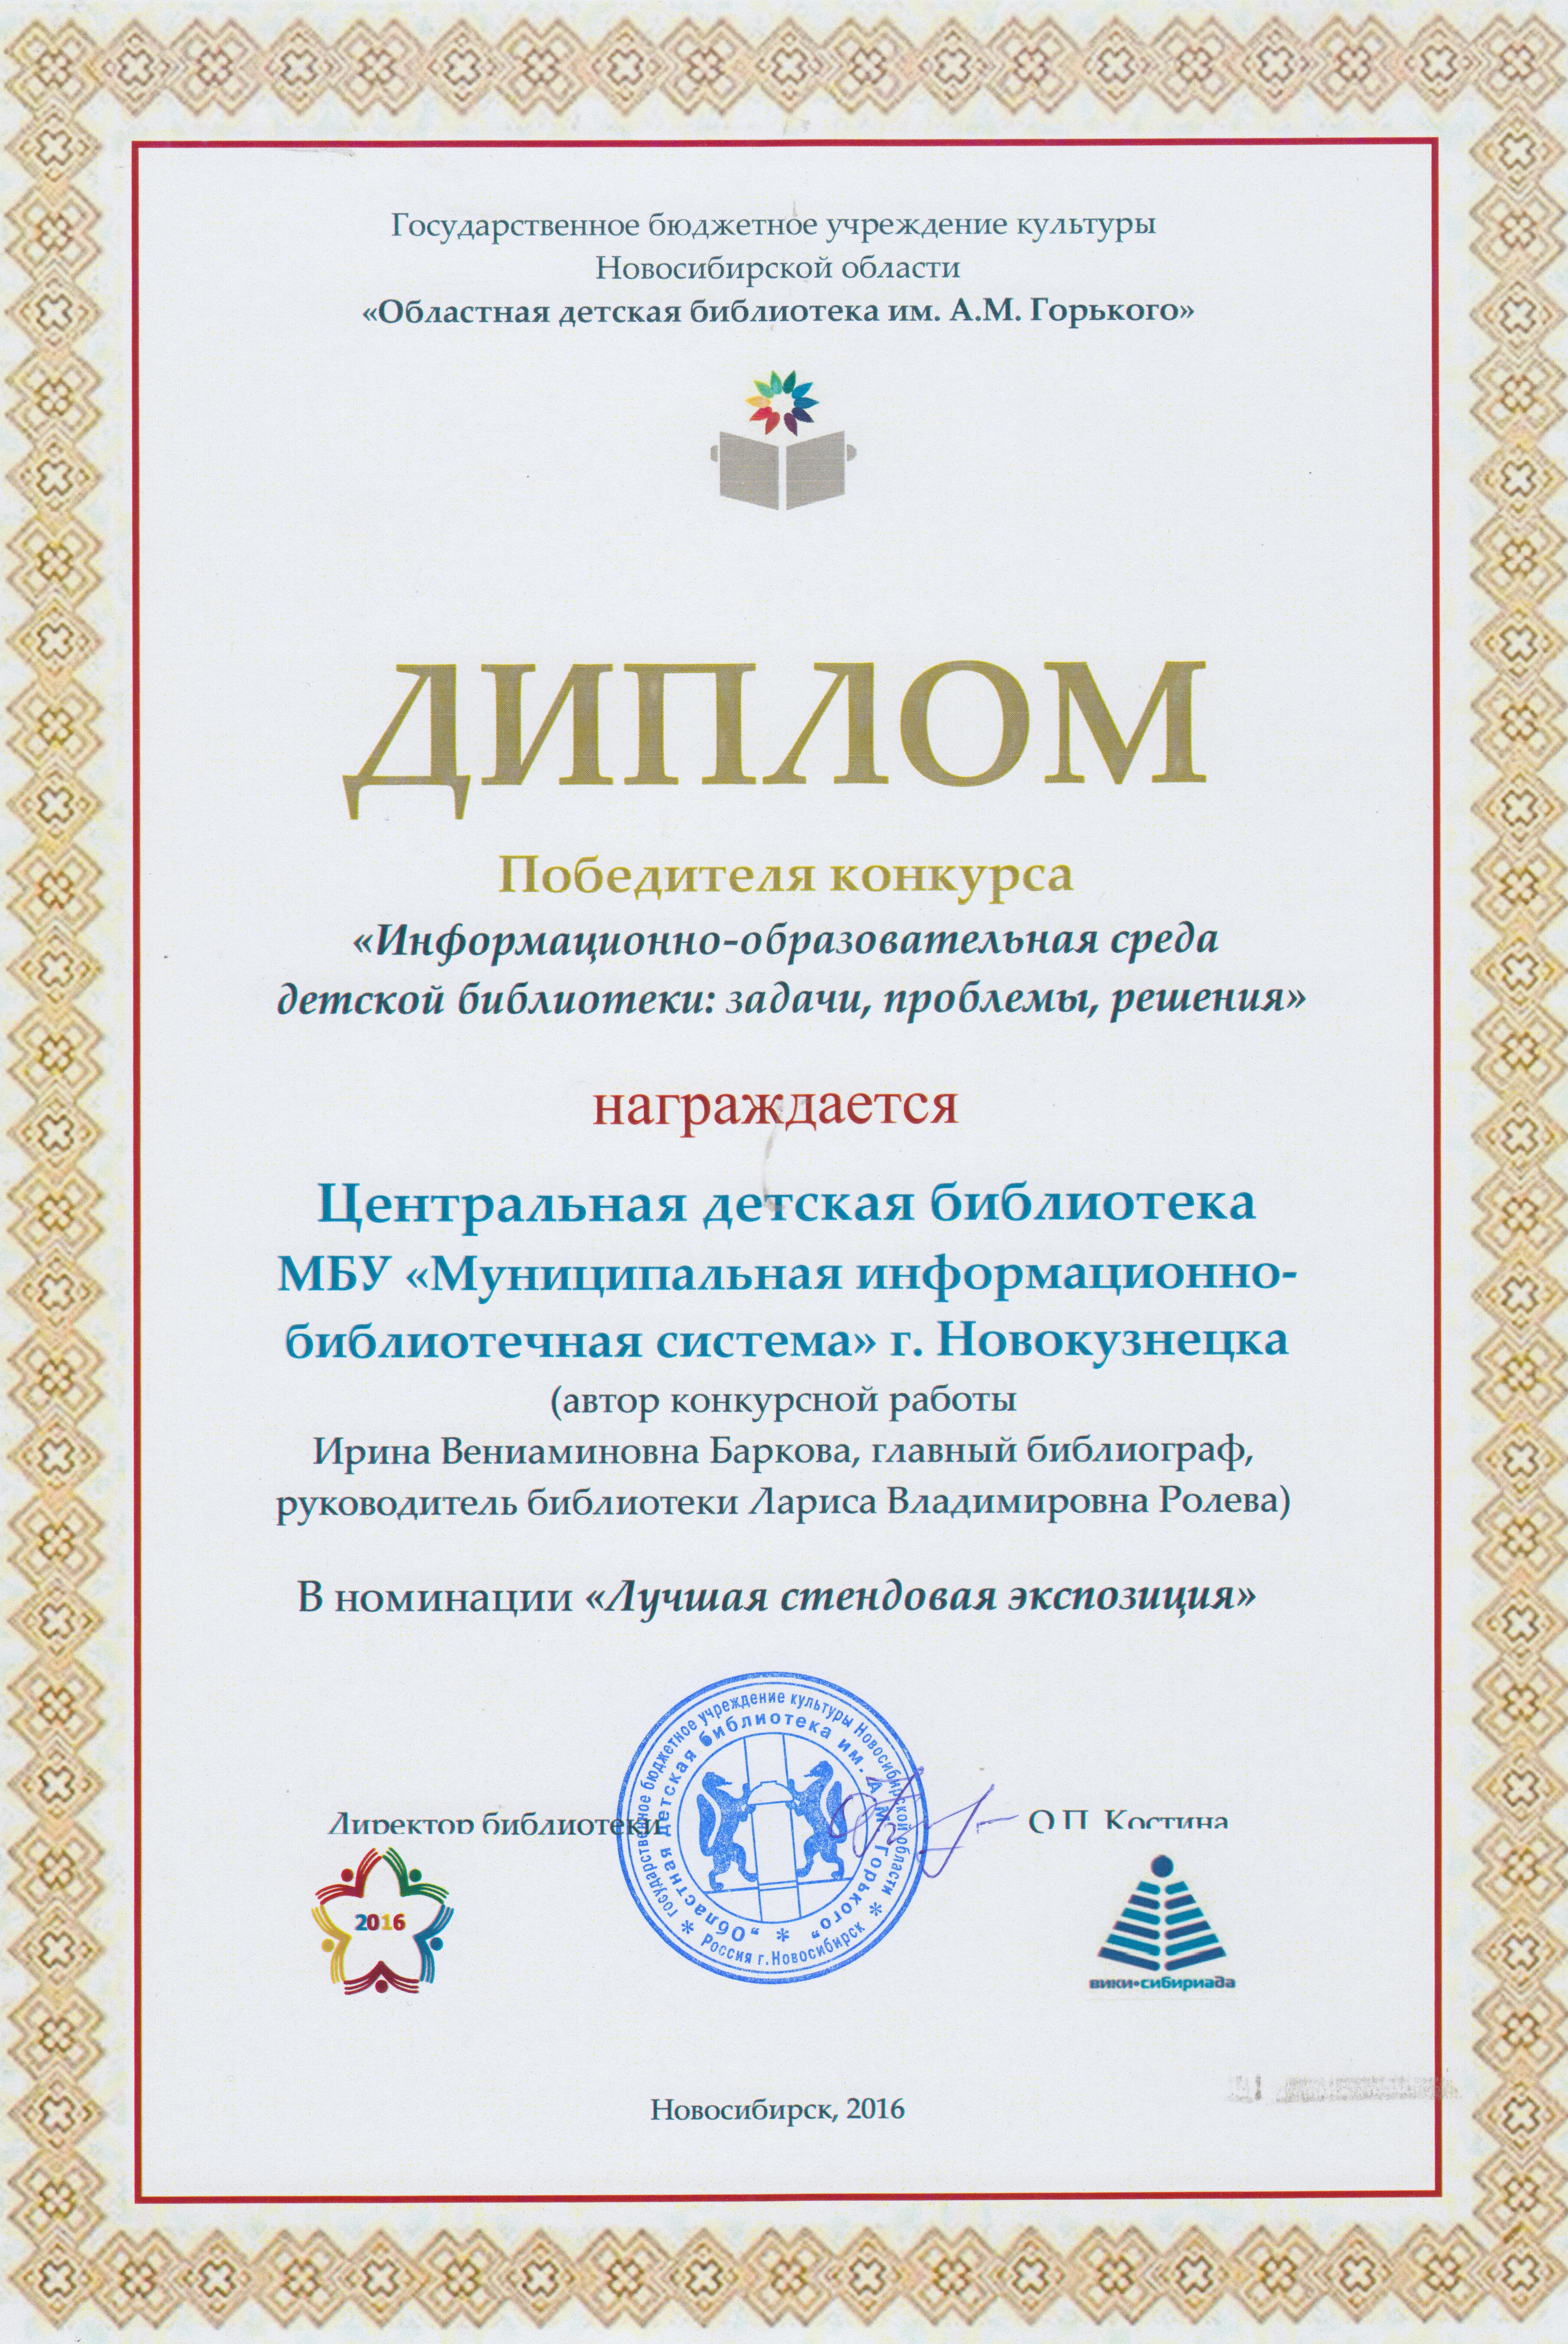 Диплом Фестиваля 2016 Баркова.jpg